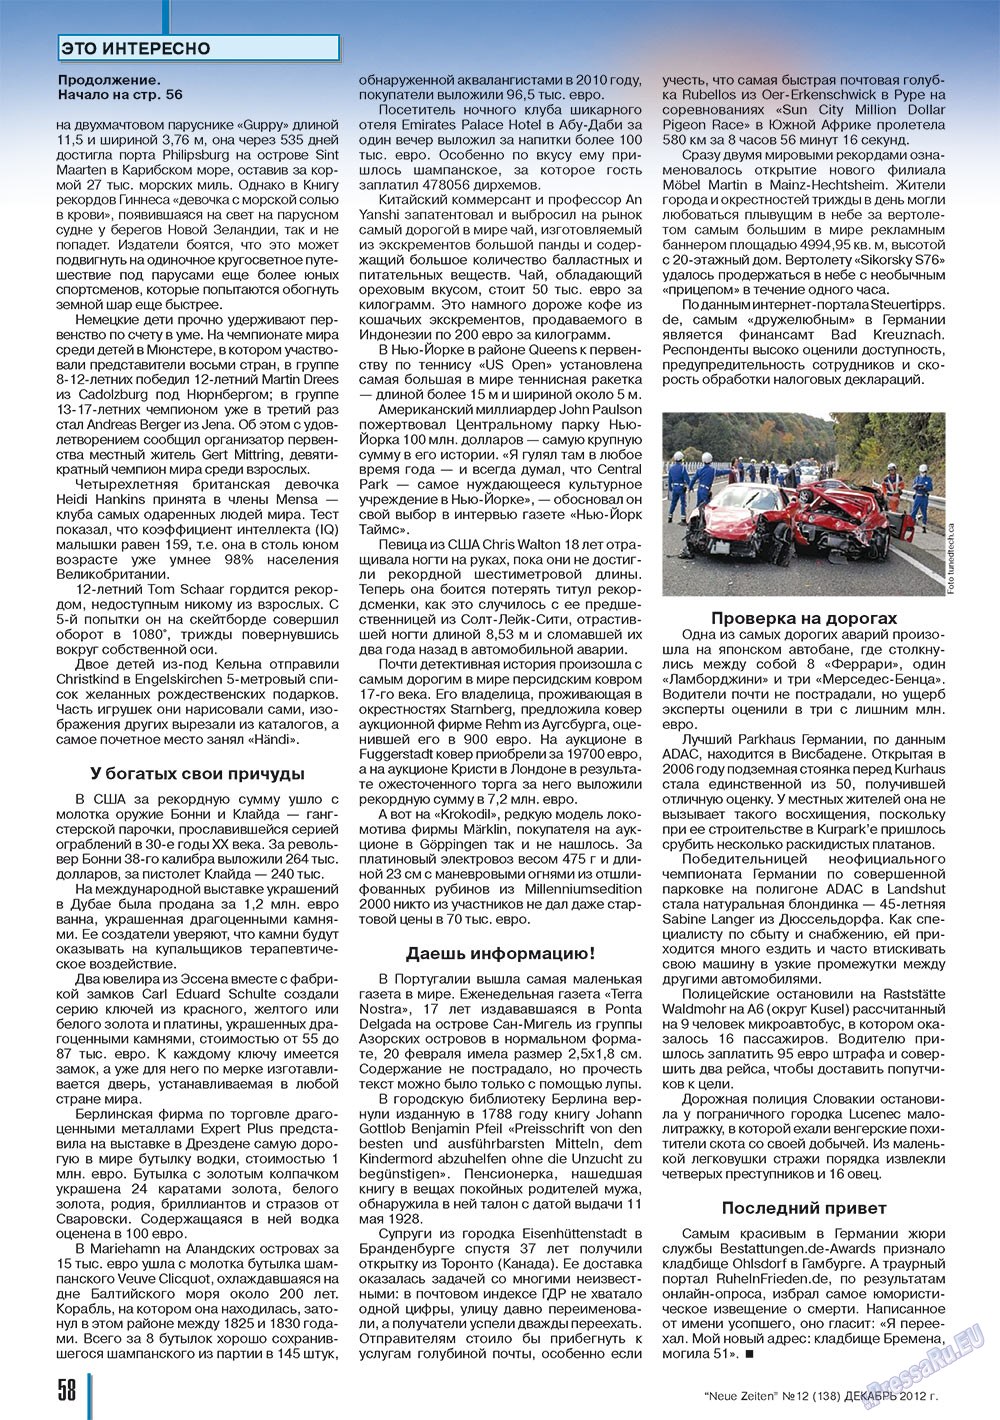 Neue Zeiten, журнал. 2012 №12 стр.58